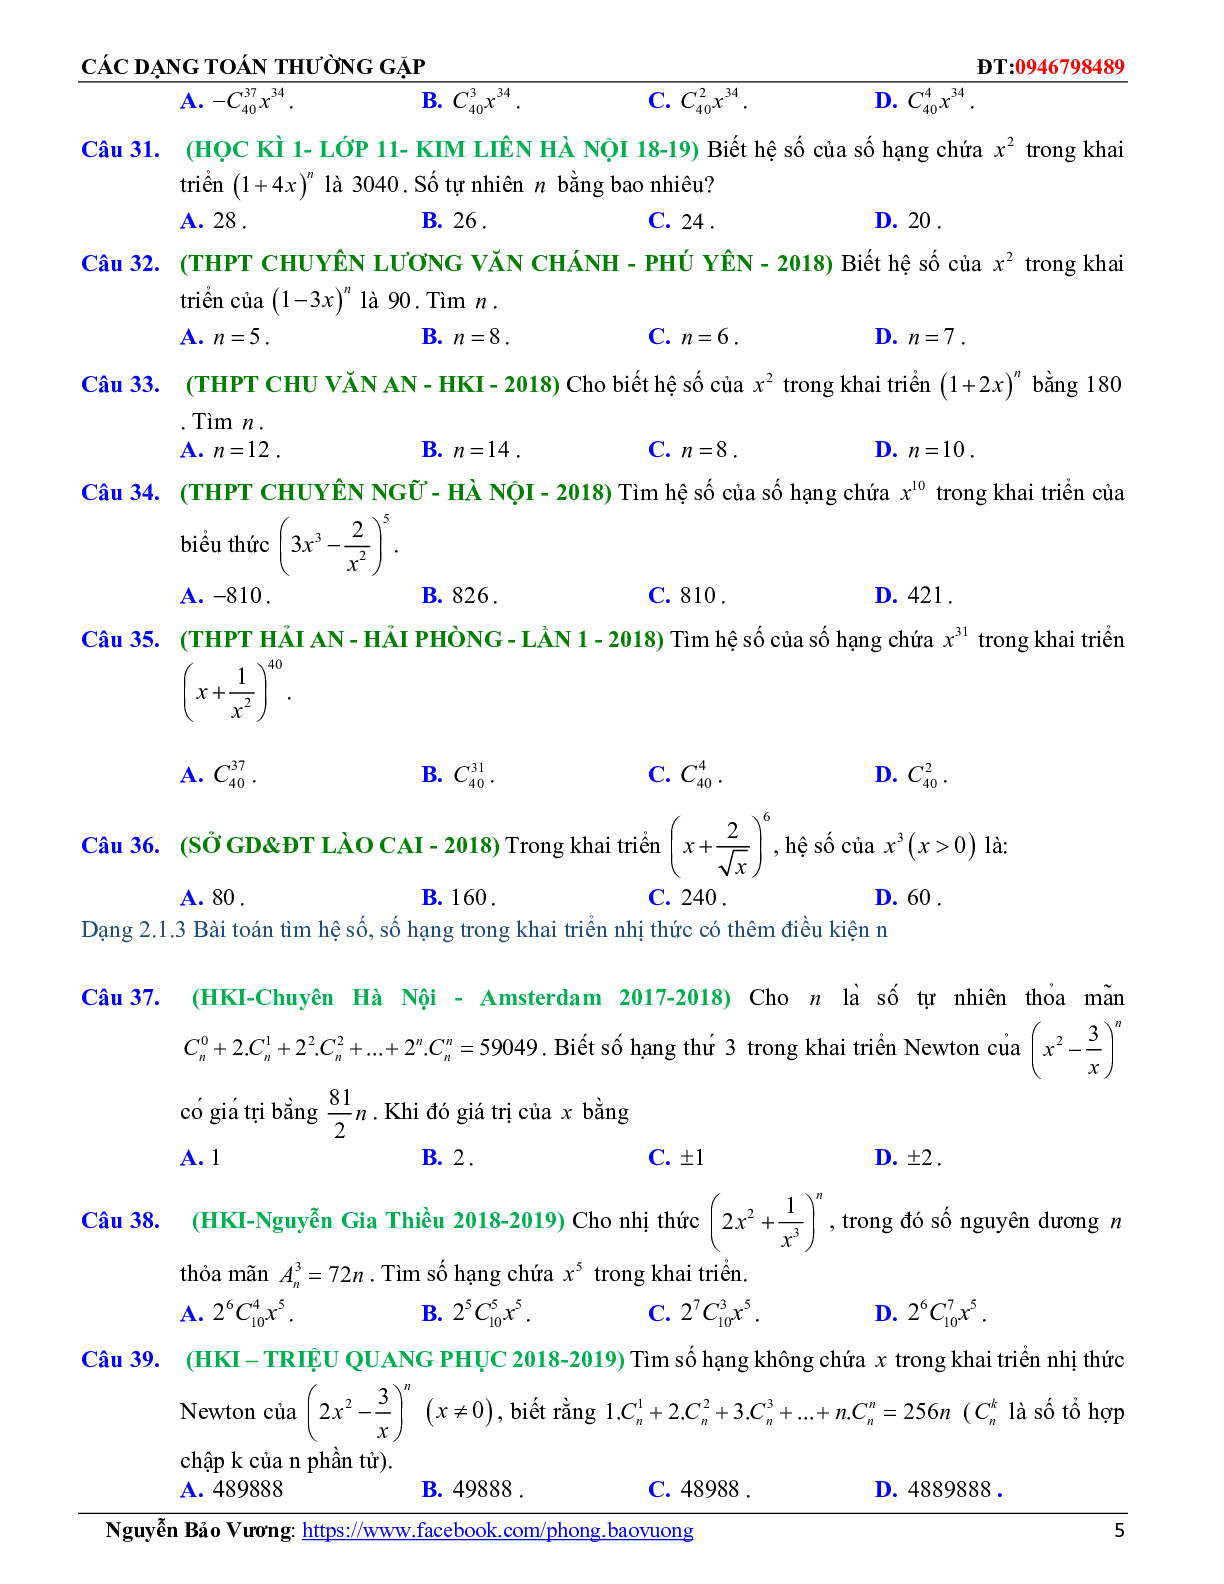 Các dạng toán nhị thức Newton và các bài toán liên quan (trang 5)